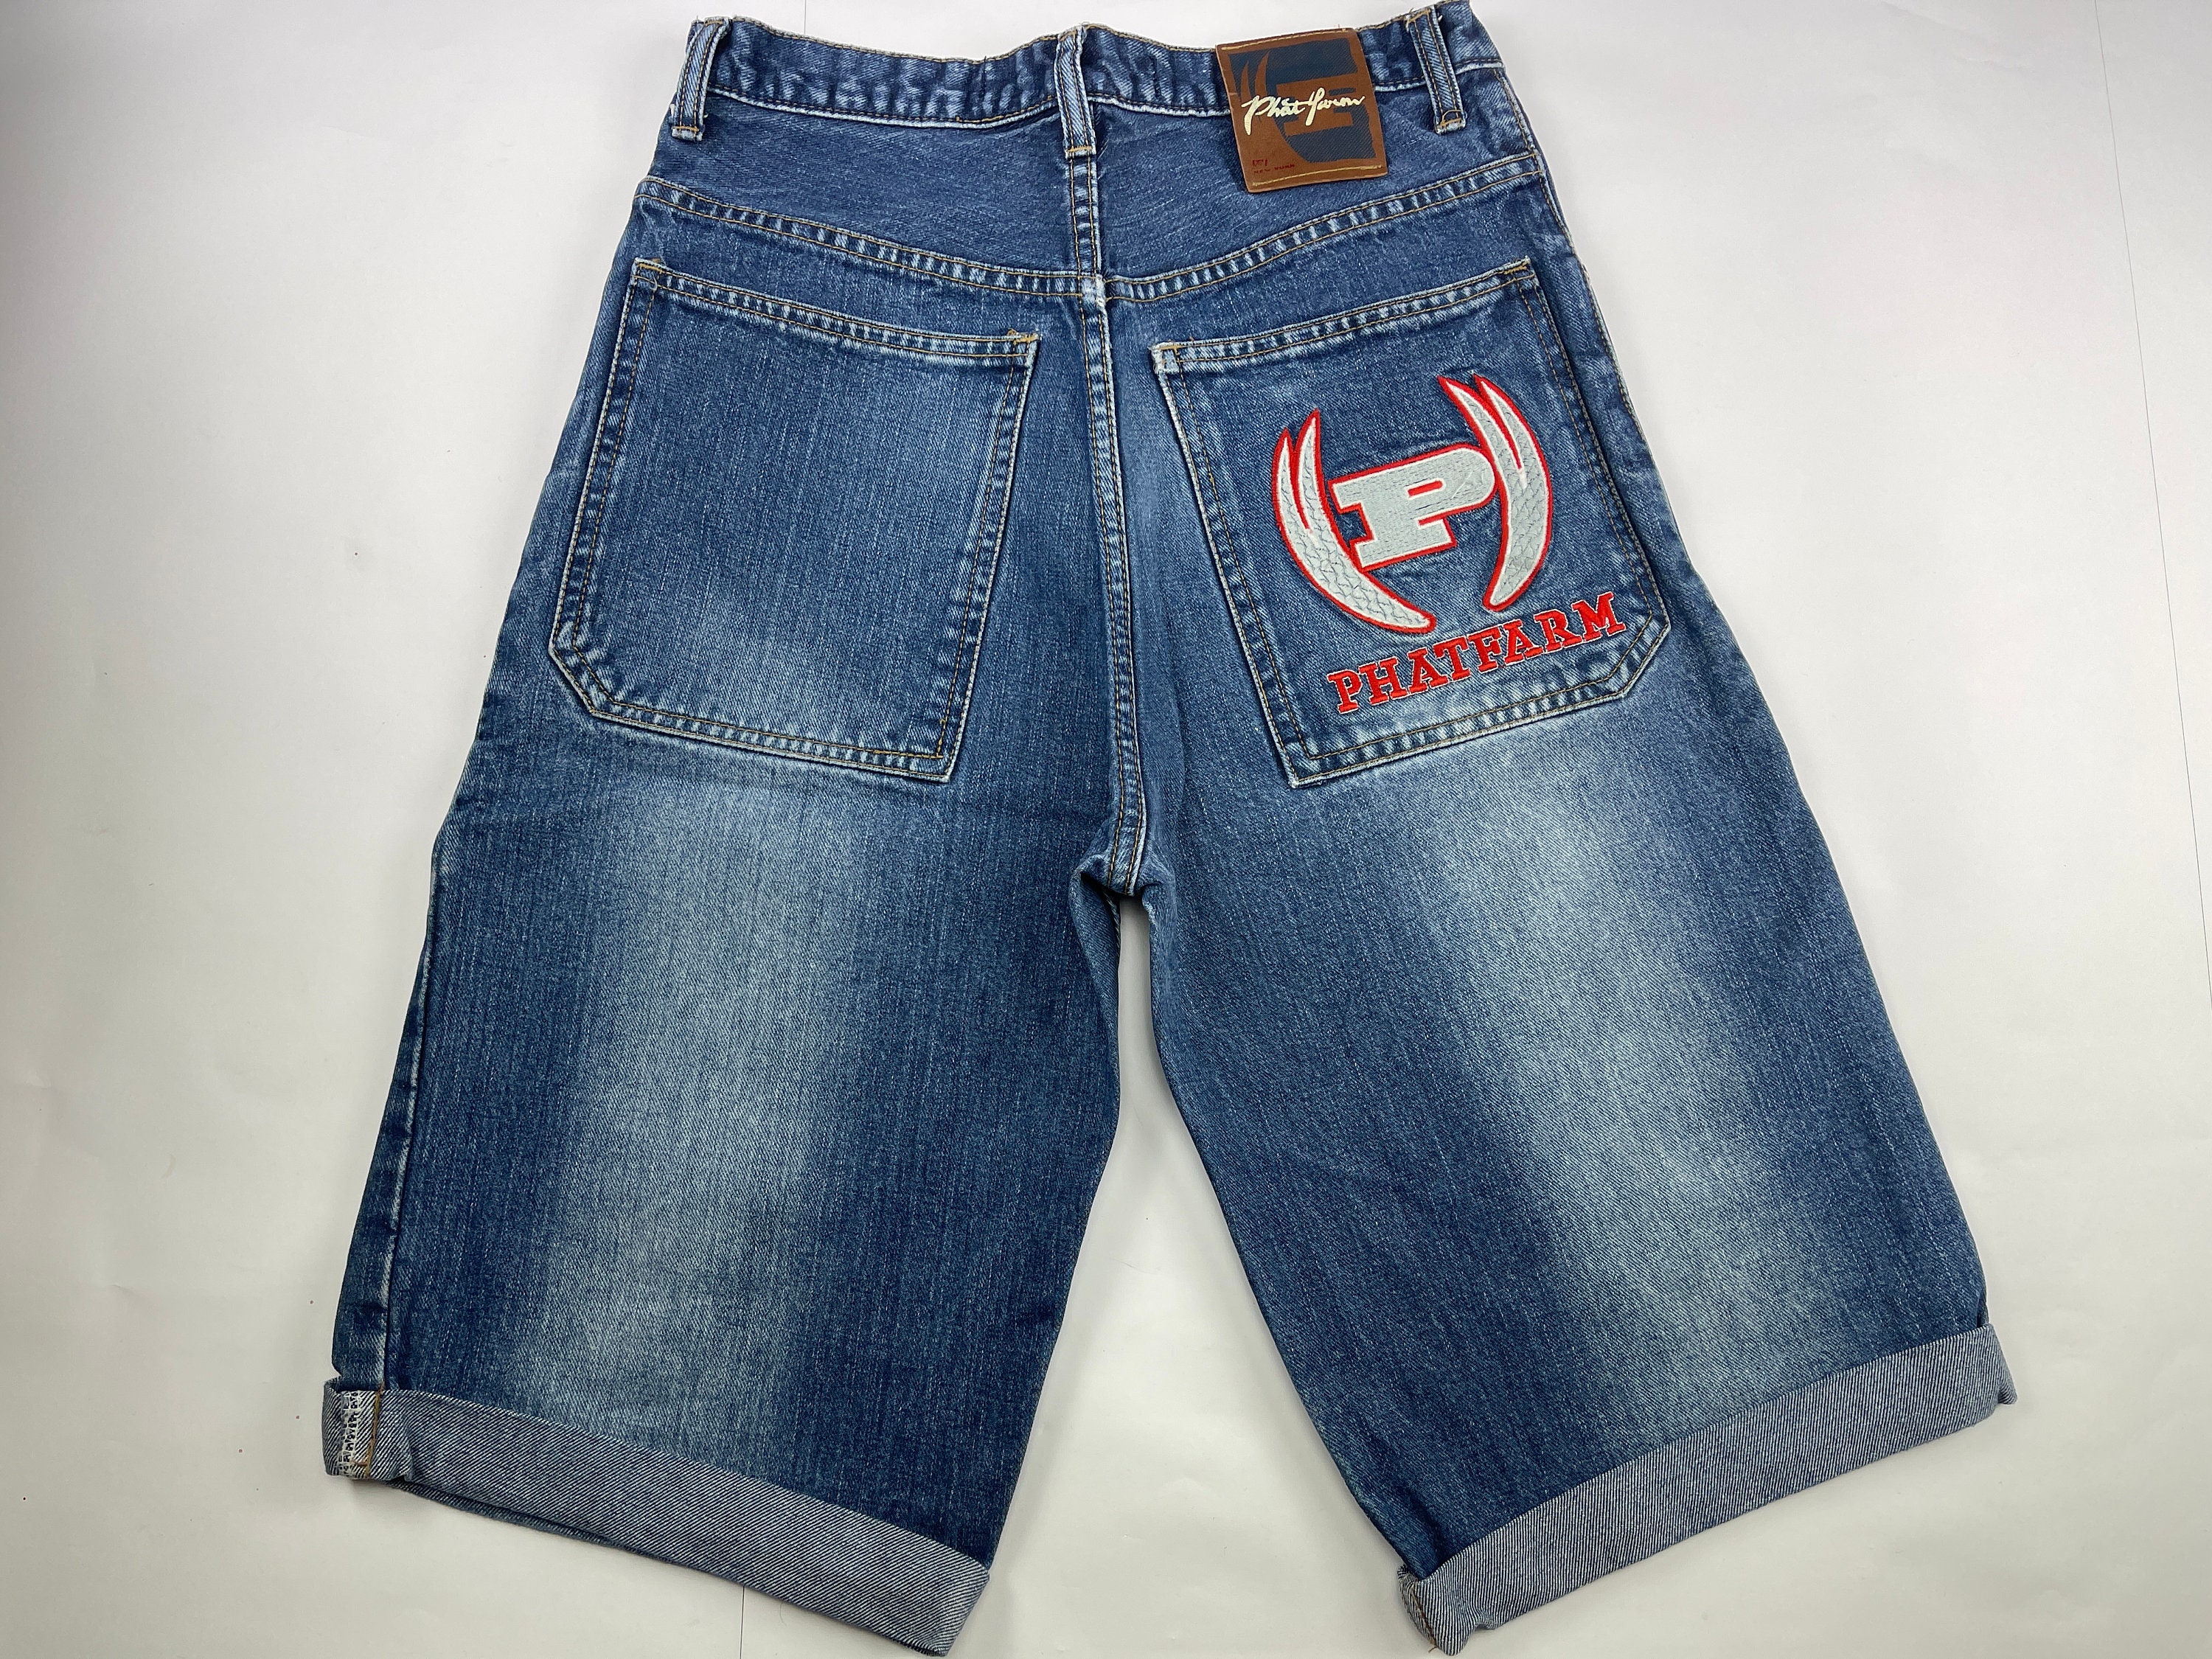 Phat Farm Jeans Shorts Blue Vintage Baggy Jeans 90s Hip-hop - Etsy